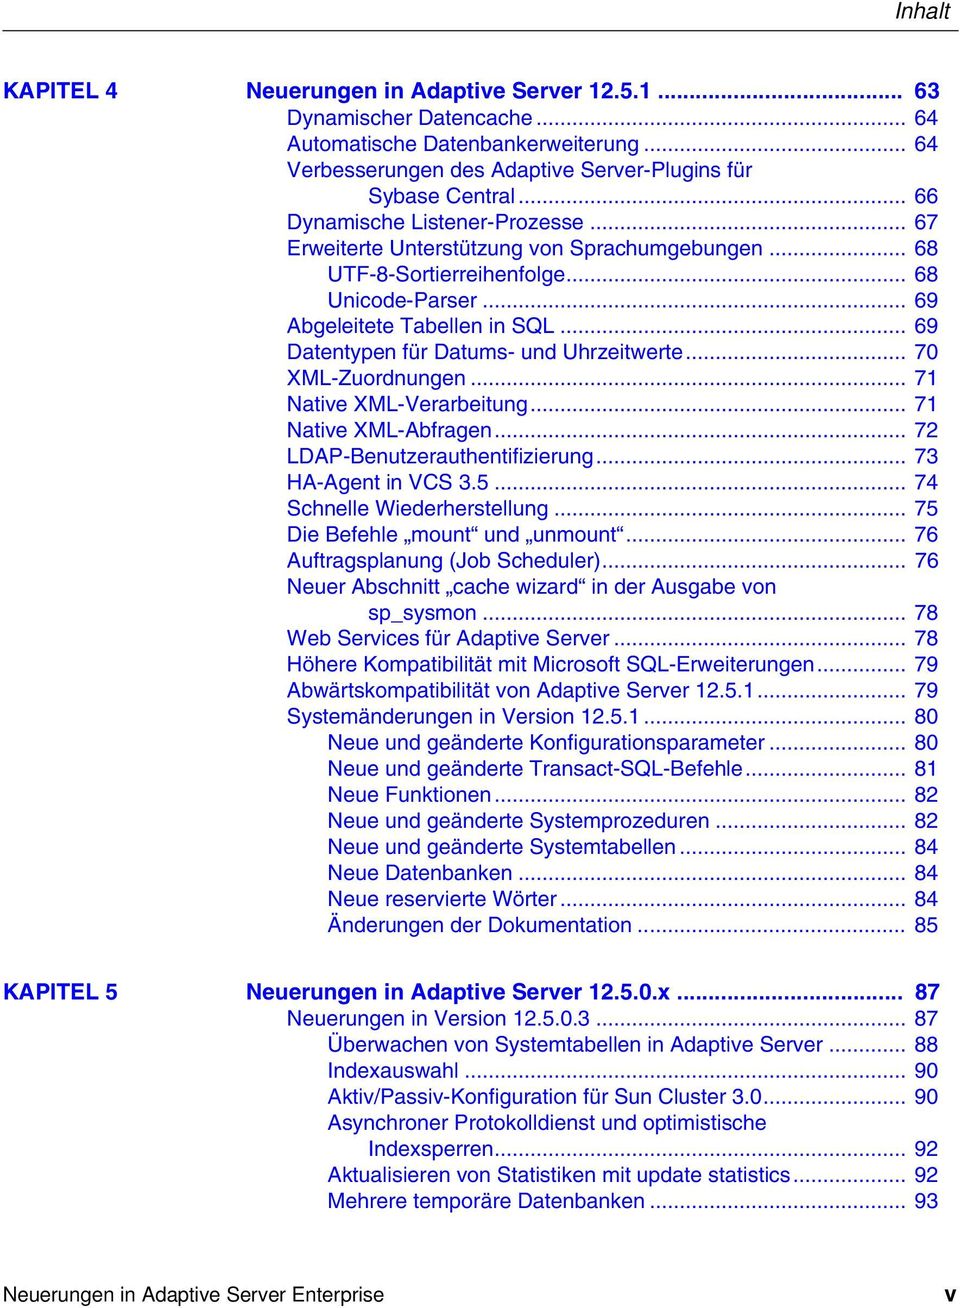 .. 69 Datentypen für Datums- und Uhrzeitwerte... 70 XML-Zuordnungen... 71 Native XML-Verarbeitung... 71 Native XML-Abfragen... 72 LDAP-Benutzerauthentifizierung... 73 HA-Agent in VCS 3.5.